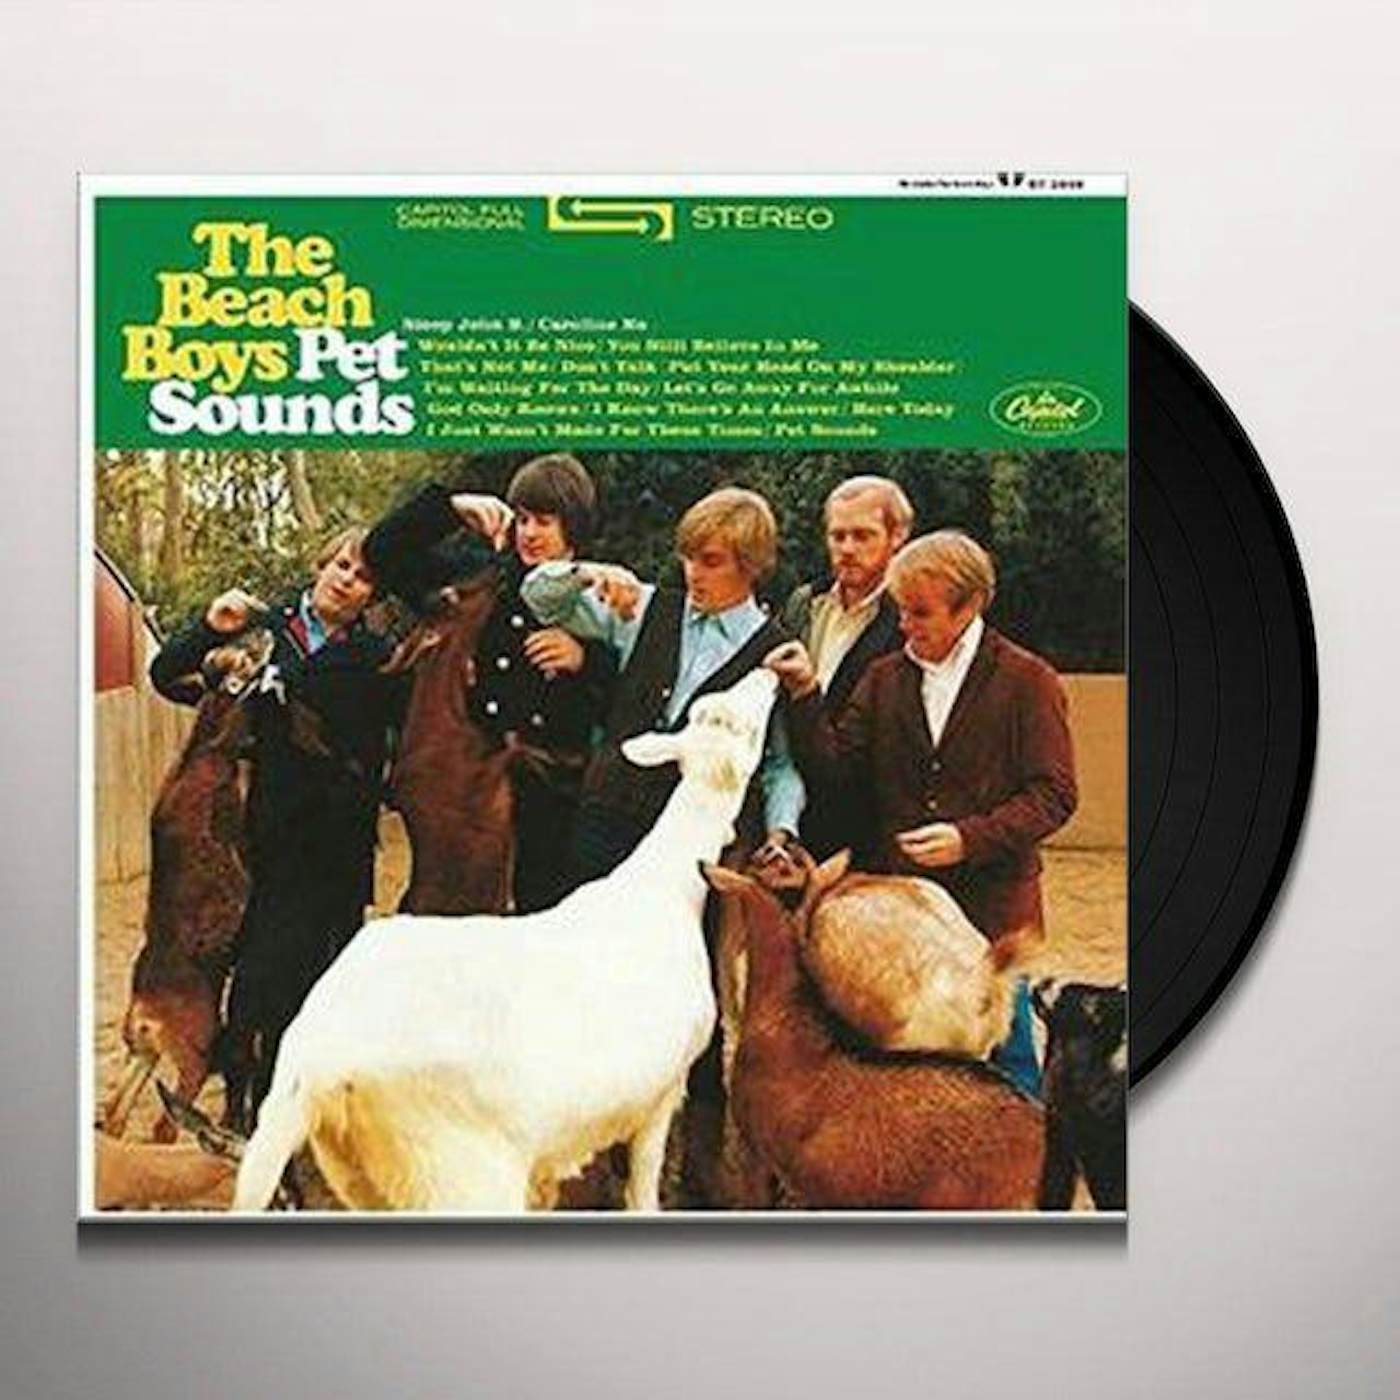 The Beach Boys Pet Sounds Vinyl Record - Mono